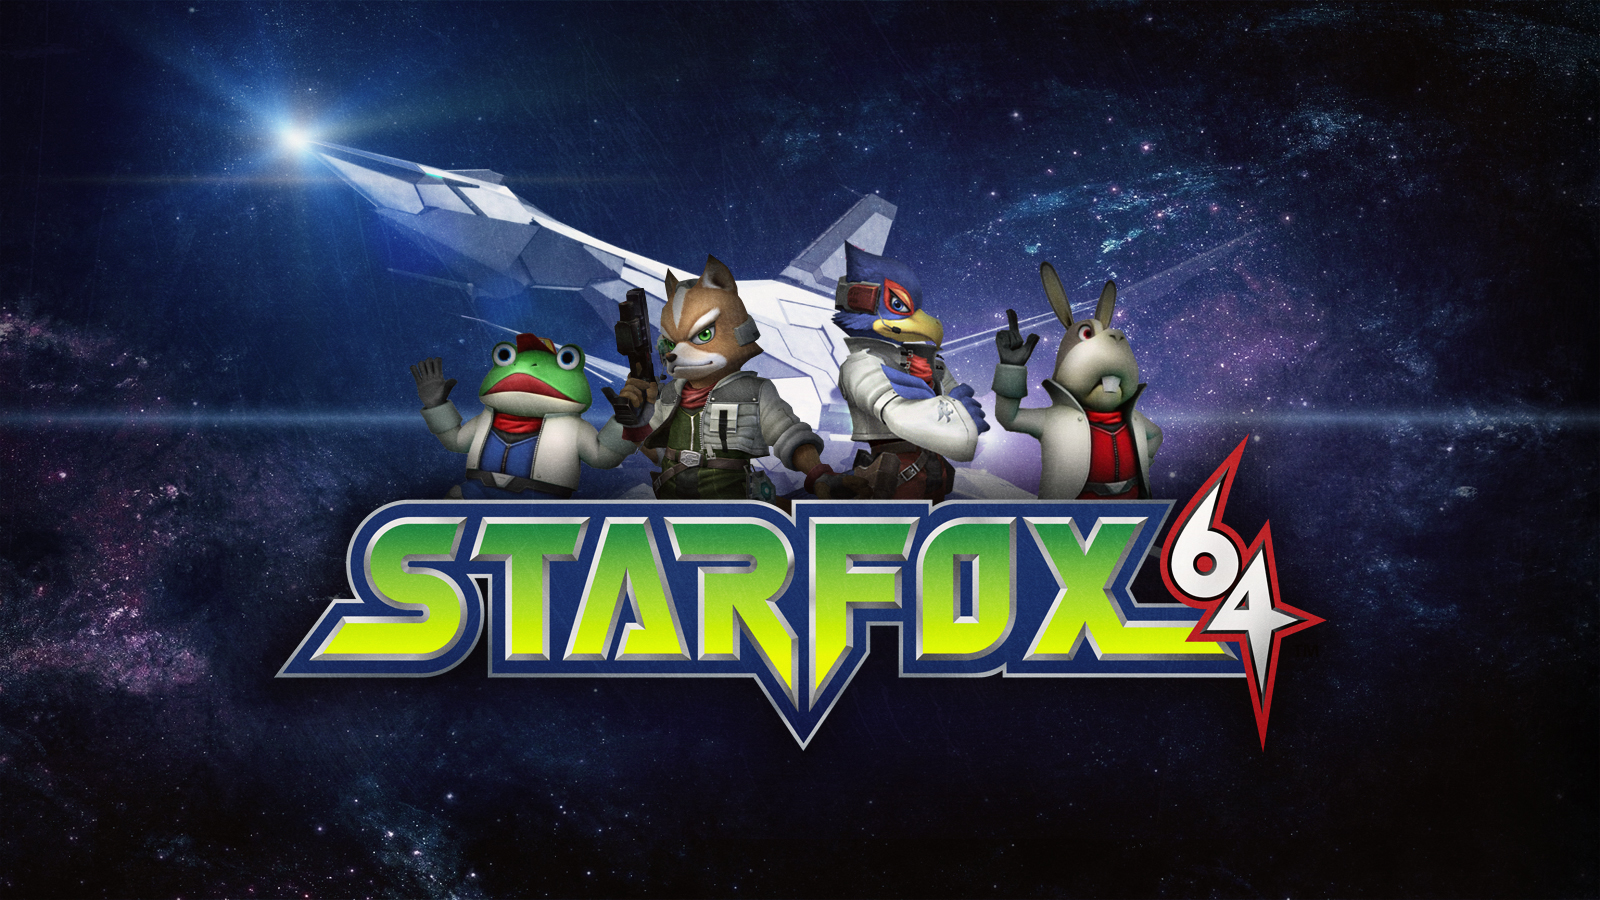 Star Fox Puter Wallpaper Desktop Background